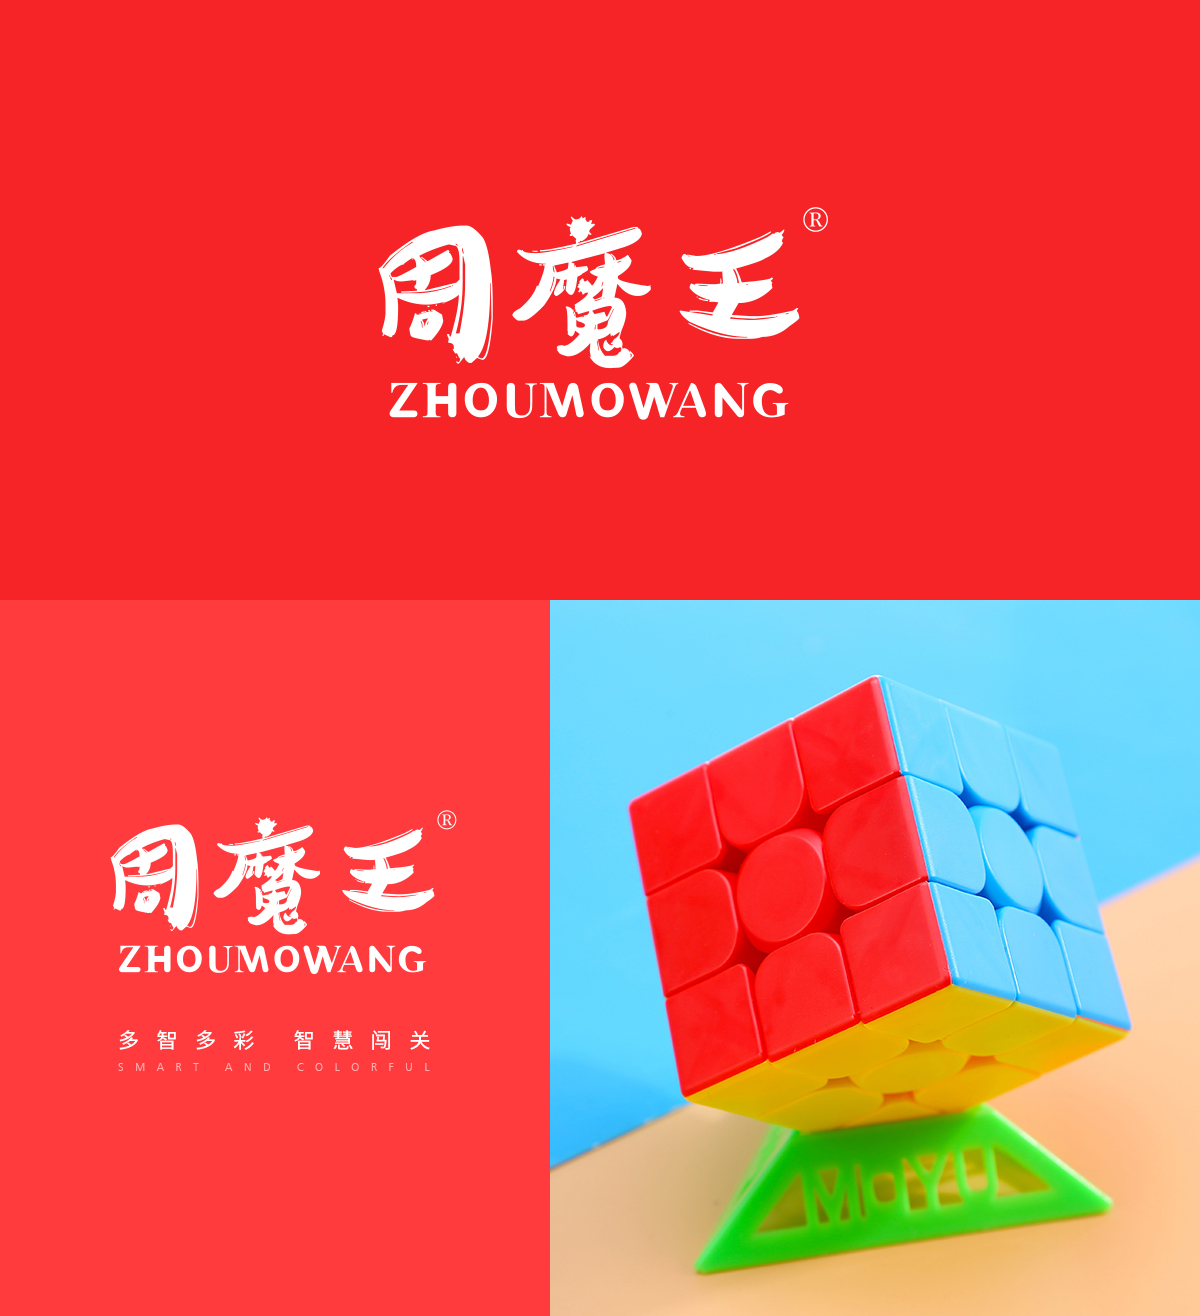 周魔王 ZHOUMOWANG